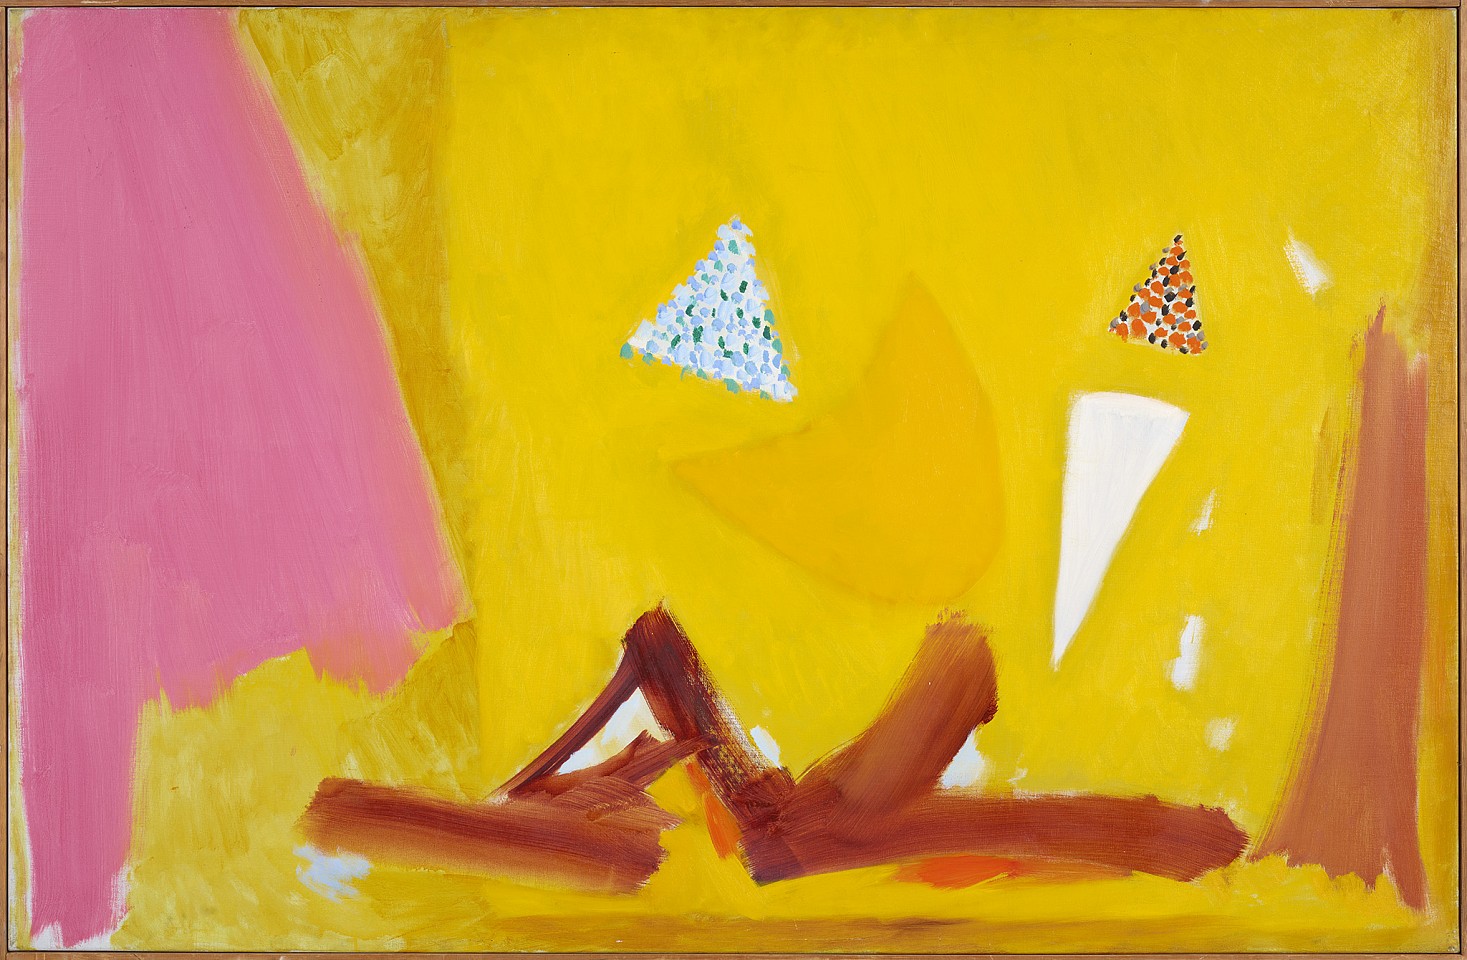 Ethel Schwabacher, The Wooing, 1961 - 1962
Oil on linen, 39 x 60 in. (99.1 x 152.4 cm)
SCHW-00228